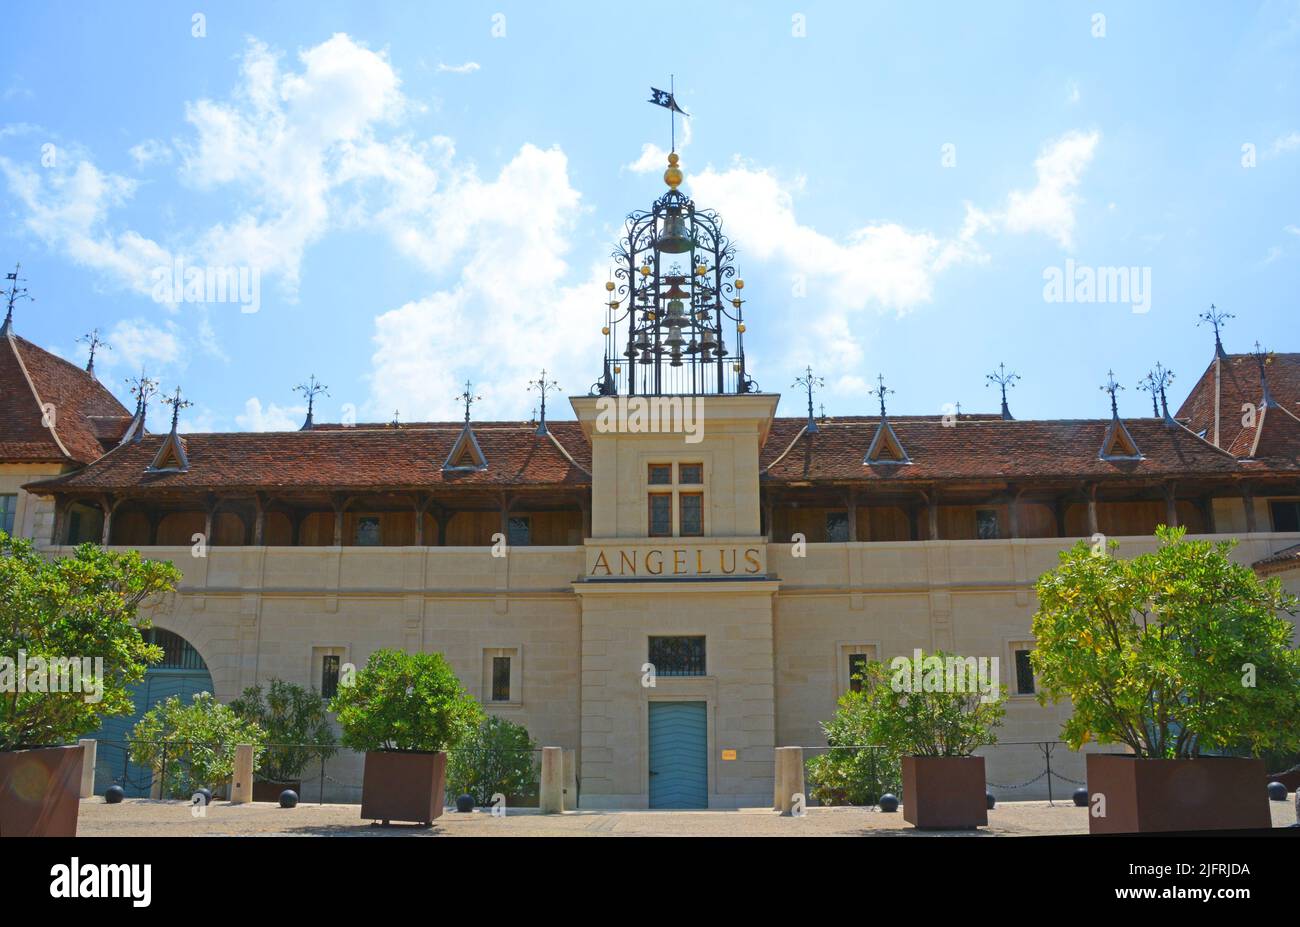 Chateau Angelus, Premier Grand Cru classé, Saint Emilion, Gironde, Nouvelle Aquitaine, France Stock Photo